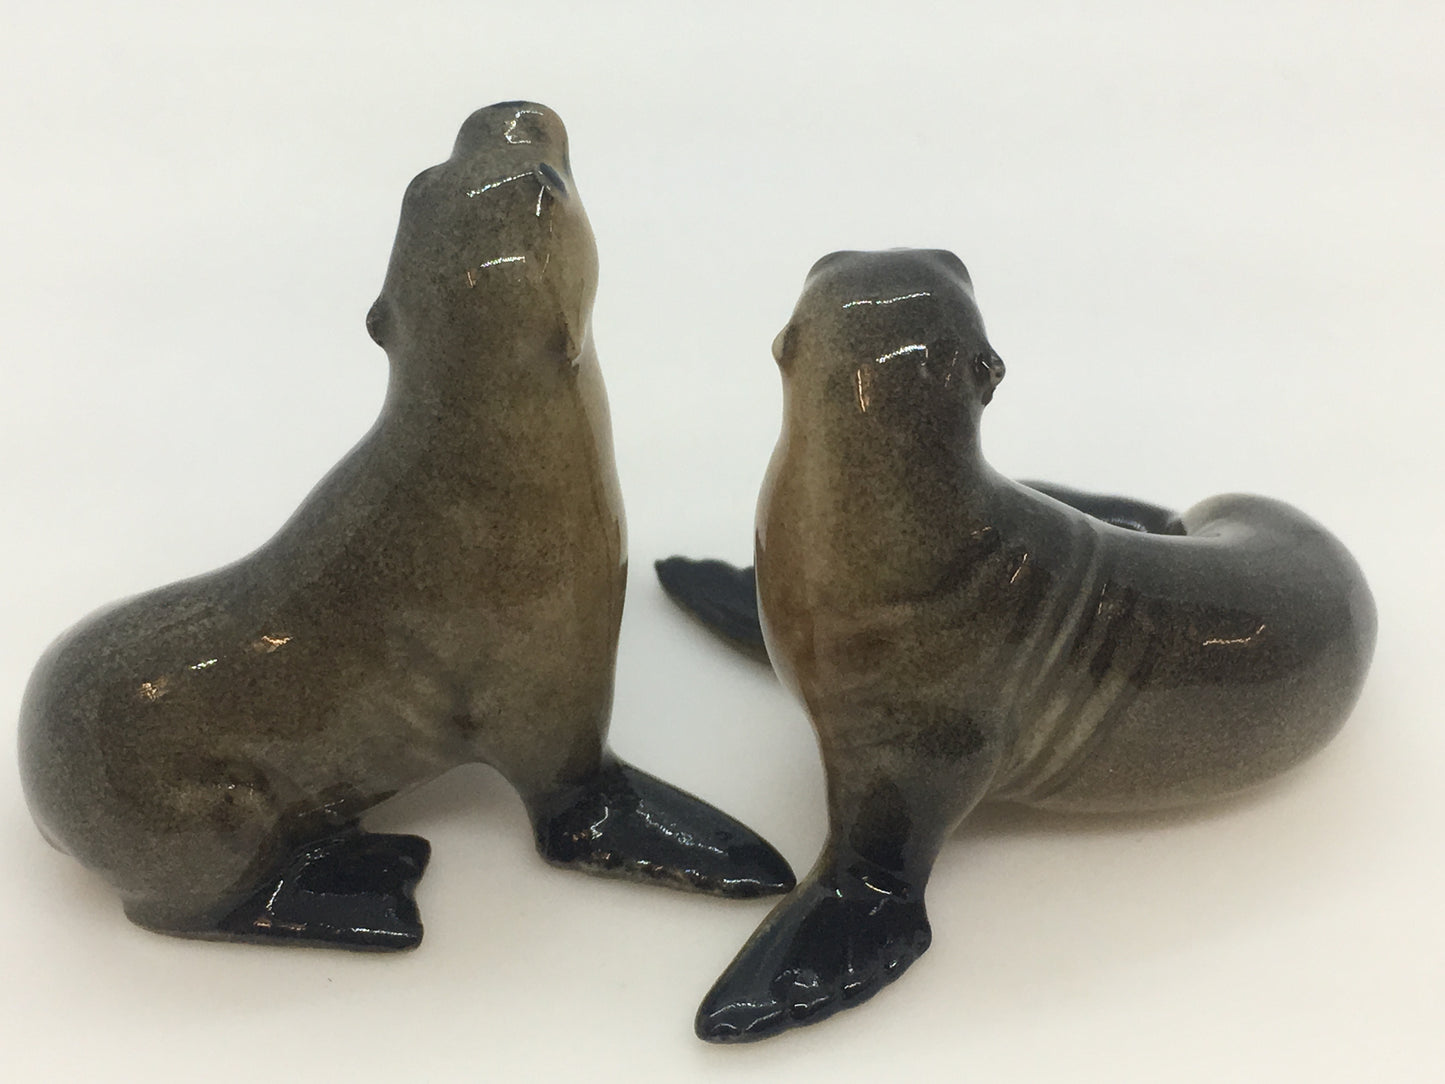 Seals Miniature Porcelain Figurines (2Pcs)